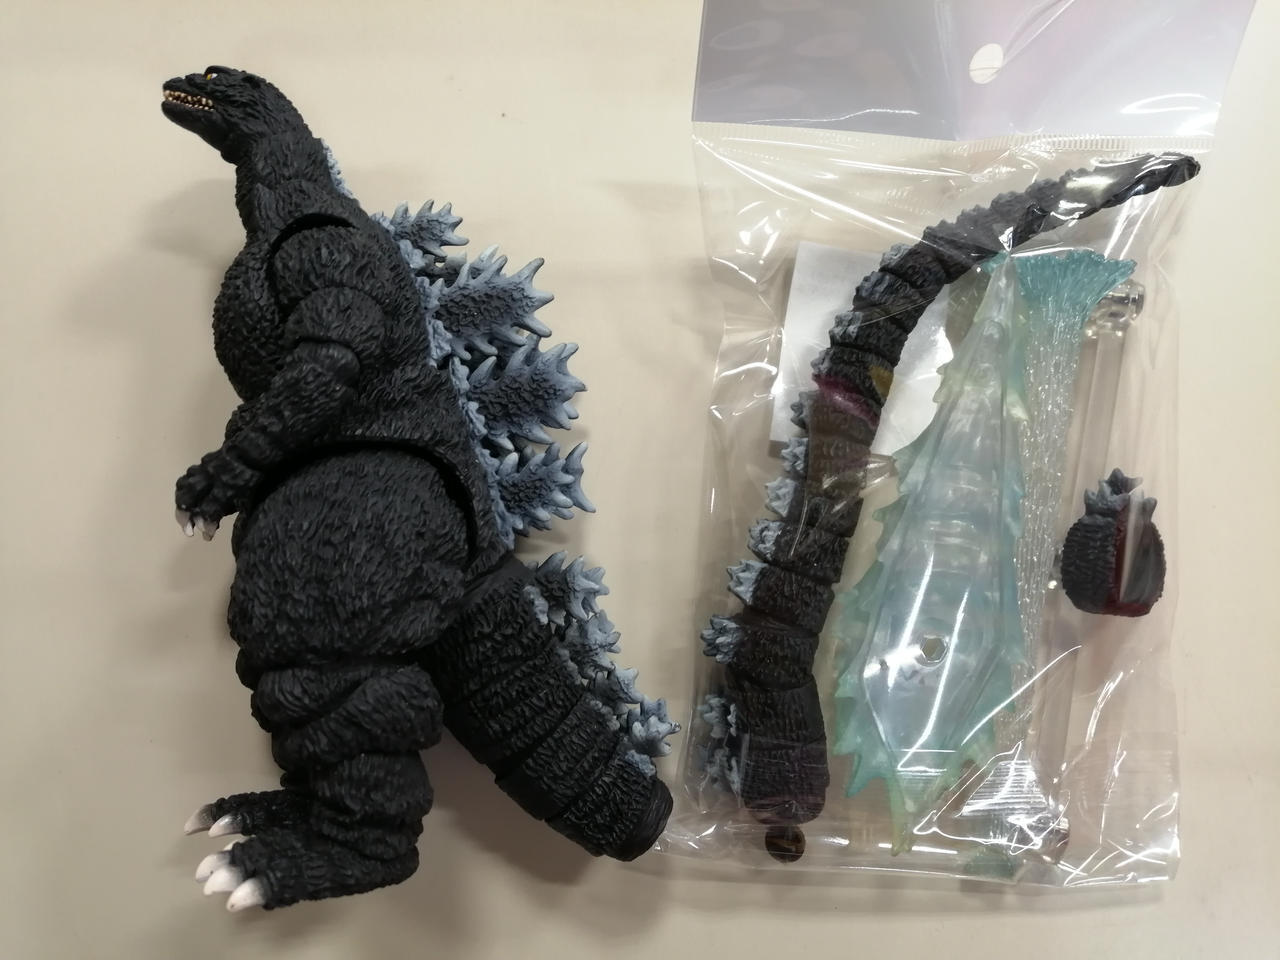 Bandai Godzilla With Heat Ray Effect S.H.Monsterarts